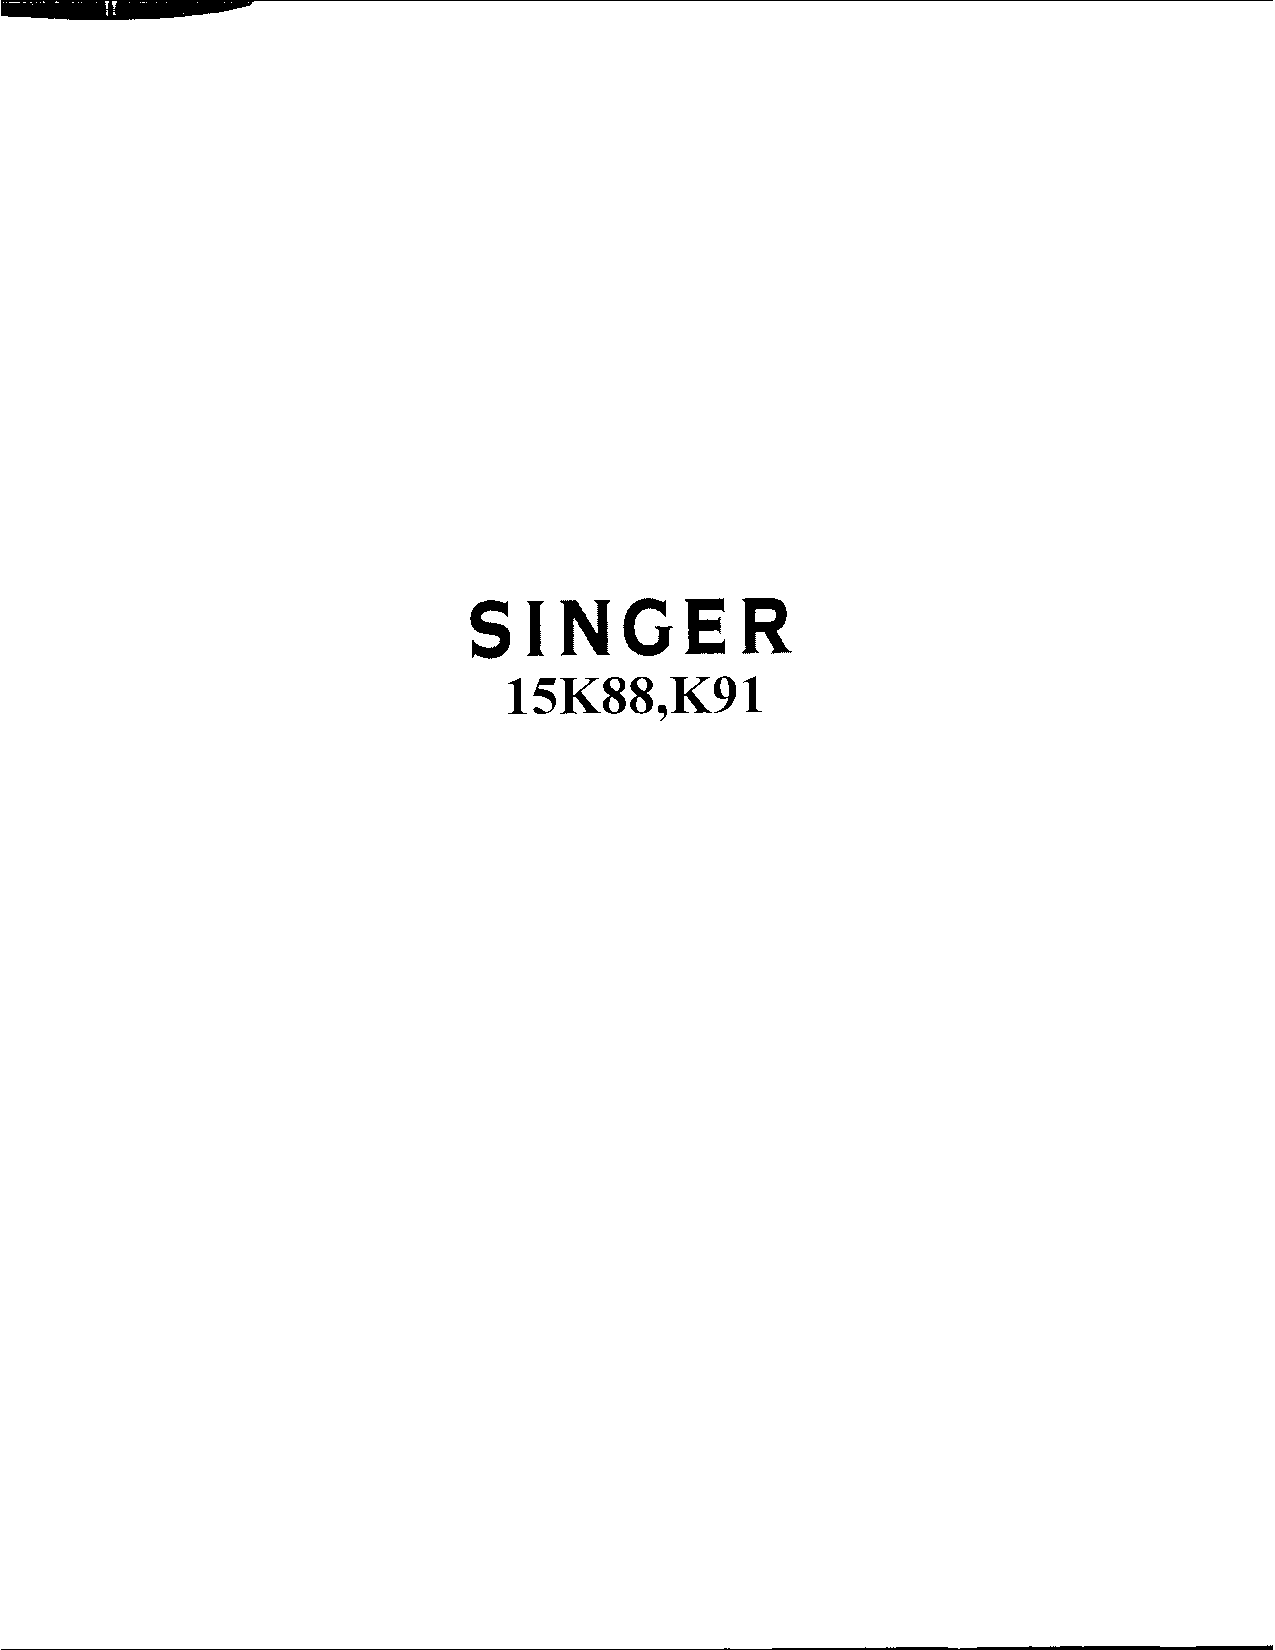 Singer 15K91, 15K88 User Manual